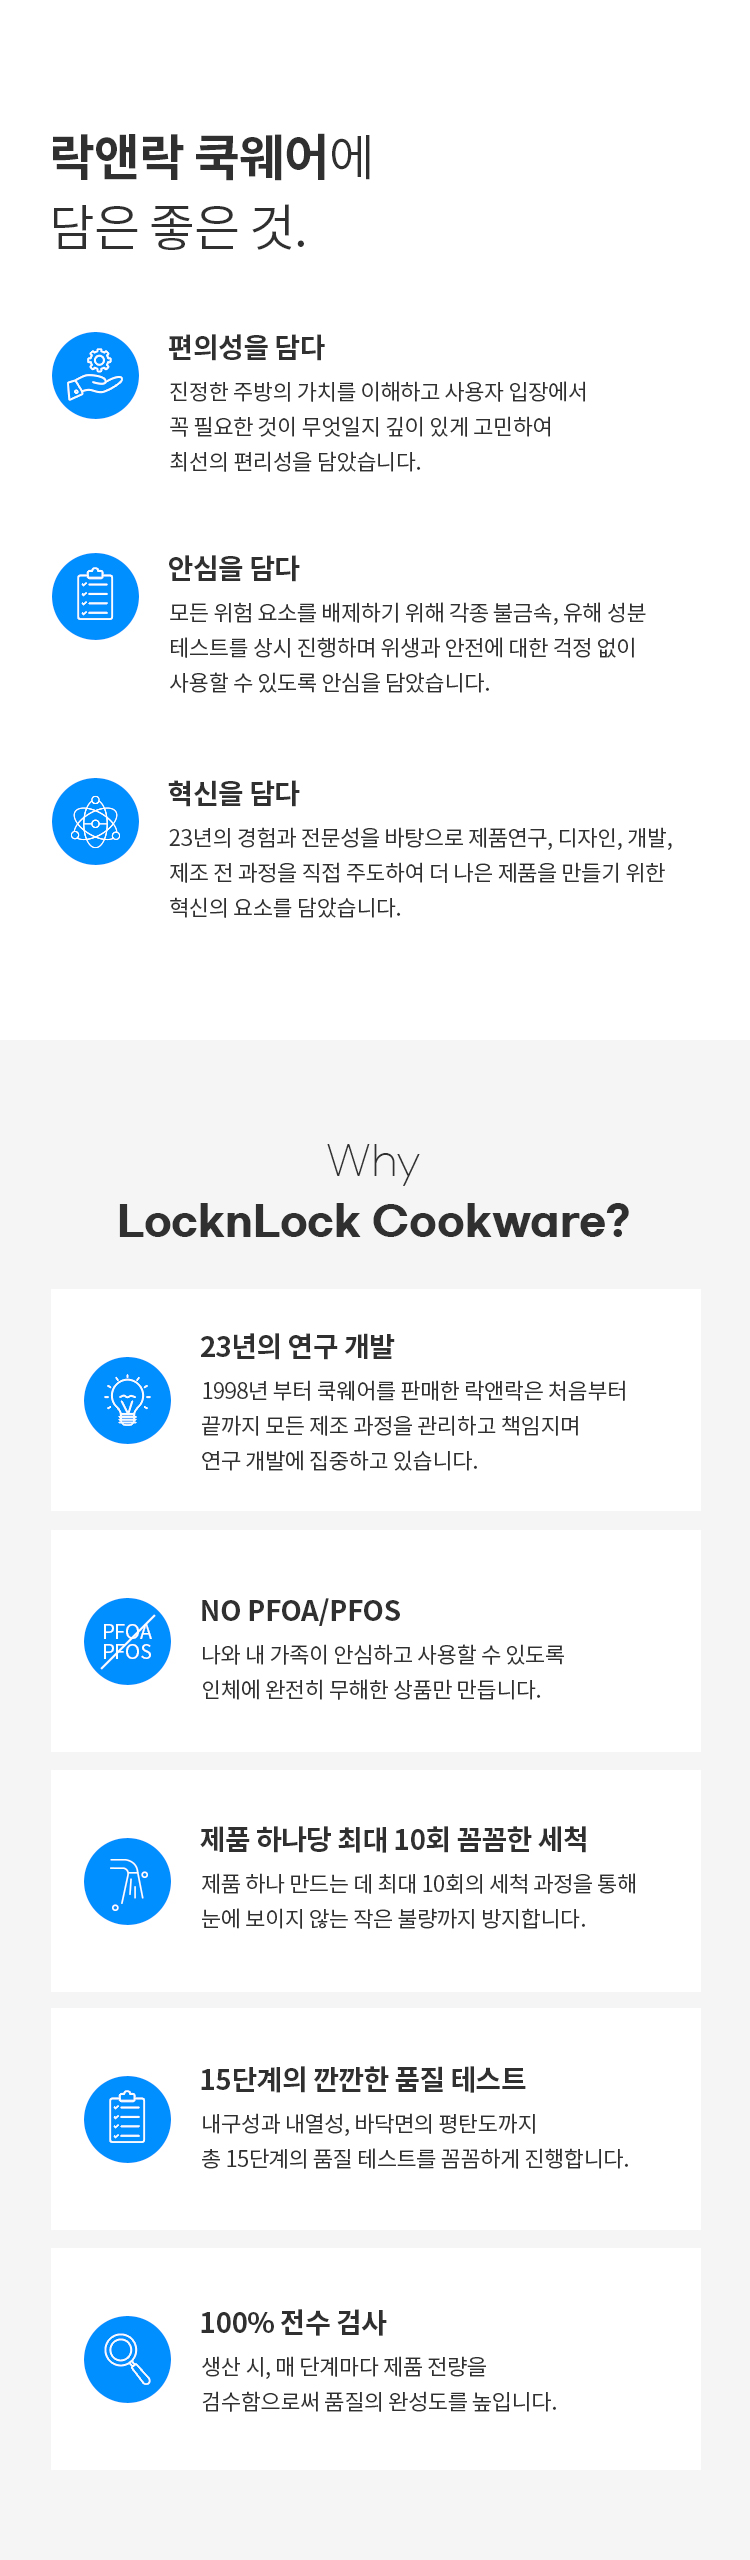 locknlock_cookware.jpg